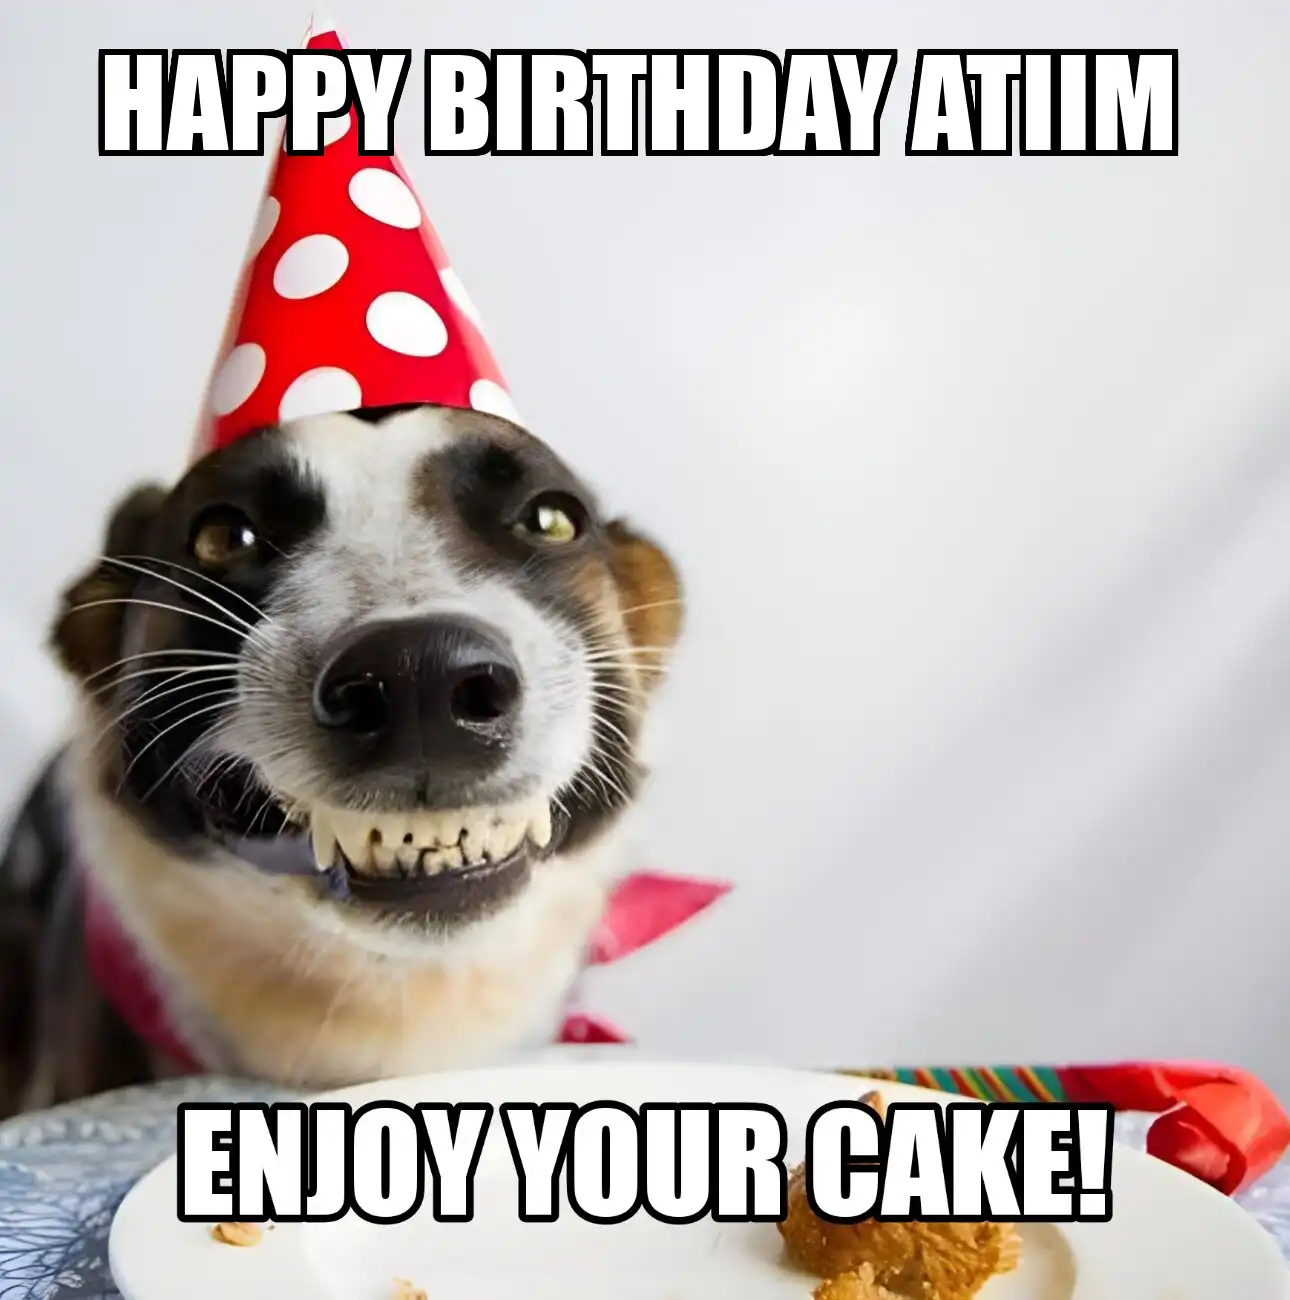 Happy Birthday Atiim Enjoy Your Cake Dog Meme